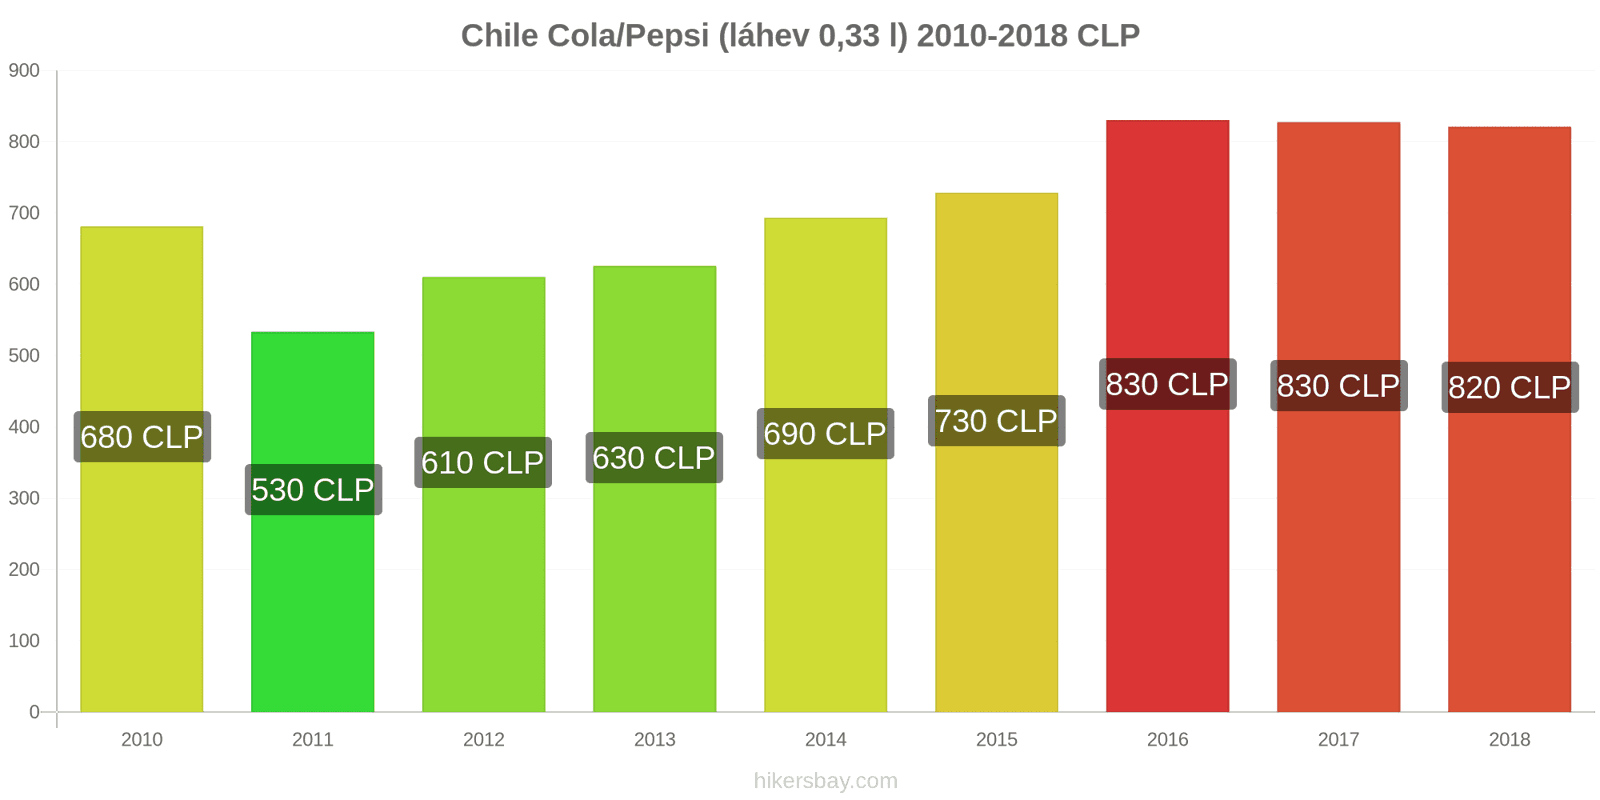 Chile změny cen Coca-Cola/Pepsi (láhev 0.33 l) hikersbay.com